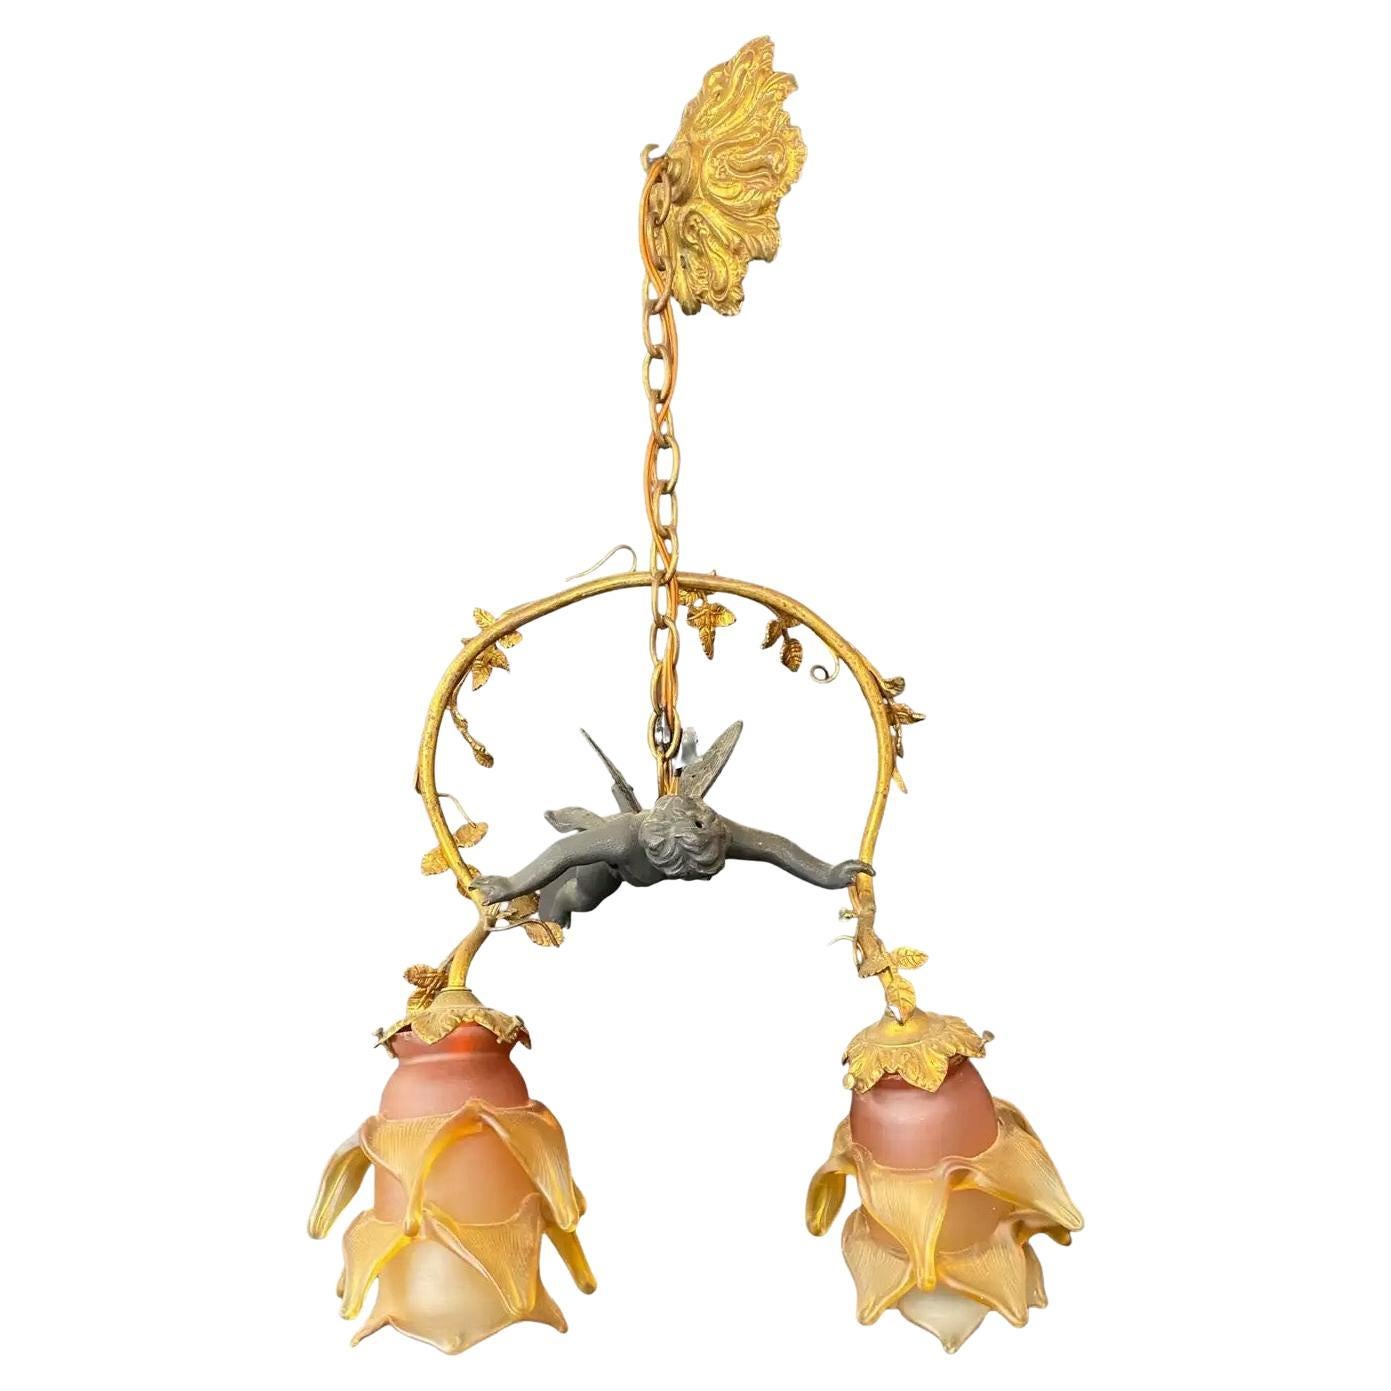 Französische Jugendstil Bonze fliegende Putto Cherub & Lalique Tulpenschirme aus mattiertem Glas